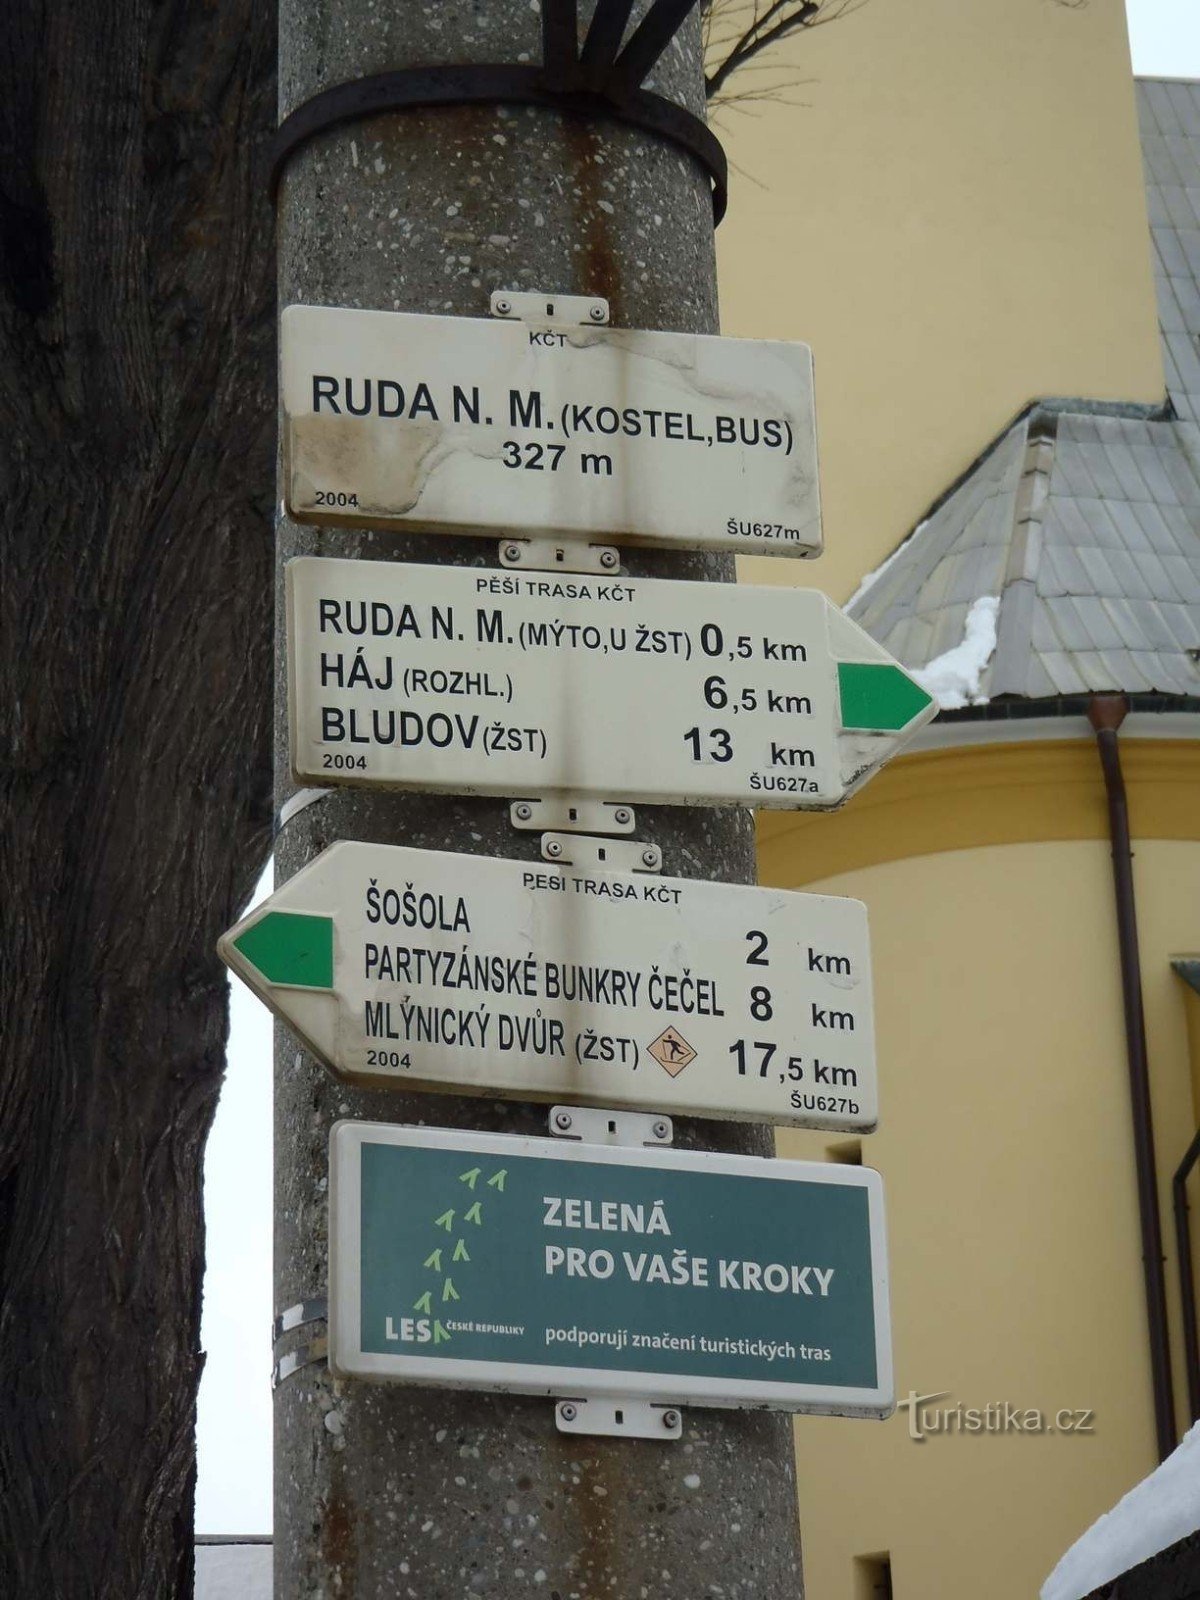 Πινακίδα εκκλησίας Ruda nad Moravou - 18.2.2012 Φεβρουαρίου XNUMX